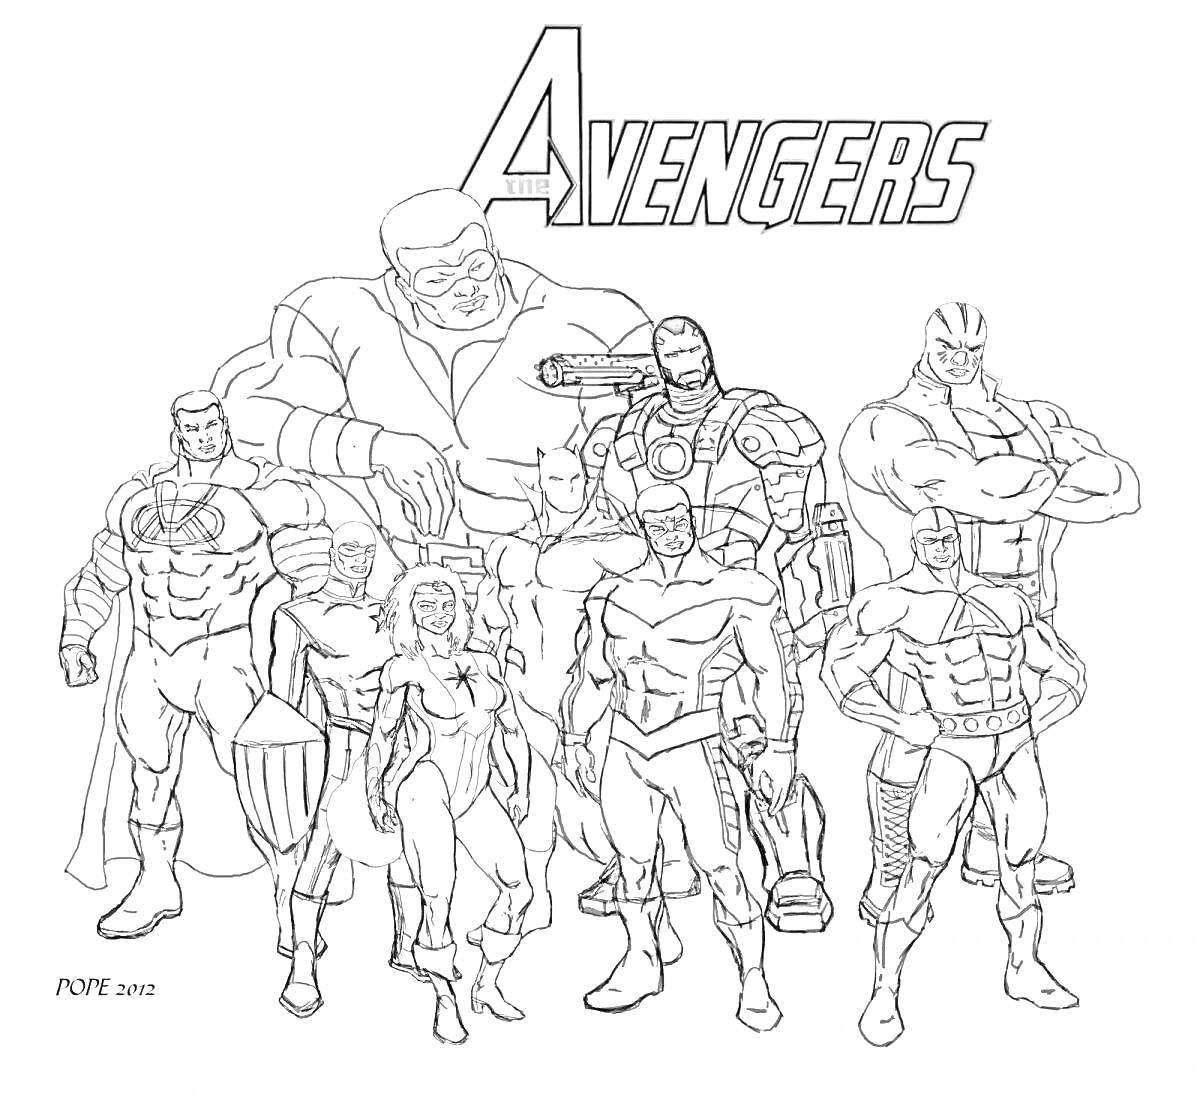 Раскраска Мстители: Девять супергероев в мести, включая крупнейшего члена команды в центре, полным боевым обмундированием, с логотипом Avengers сверху